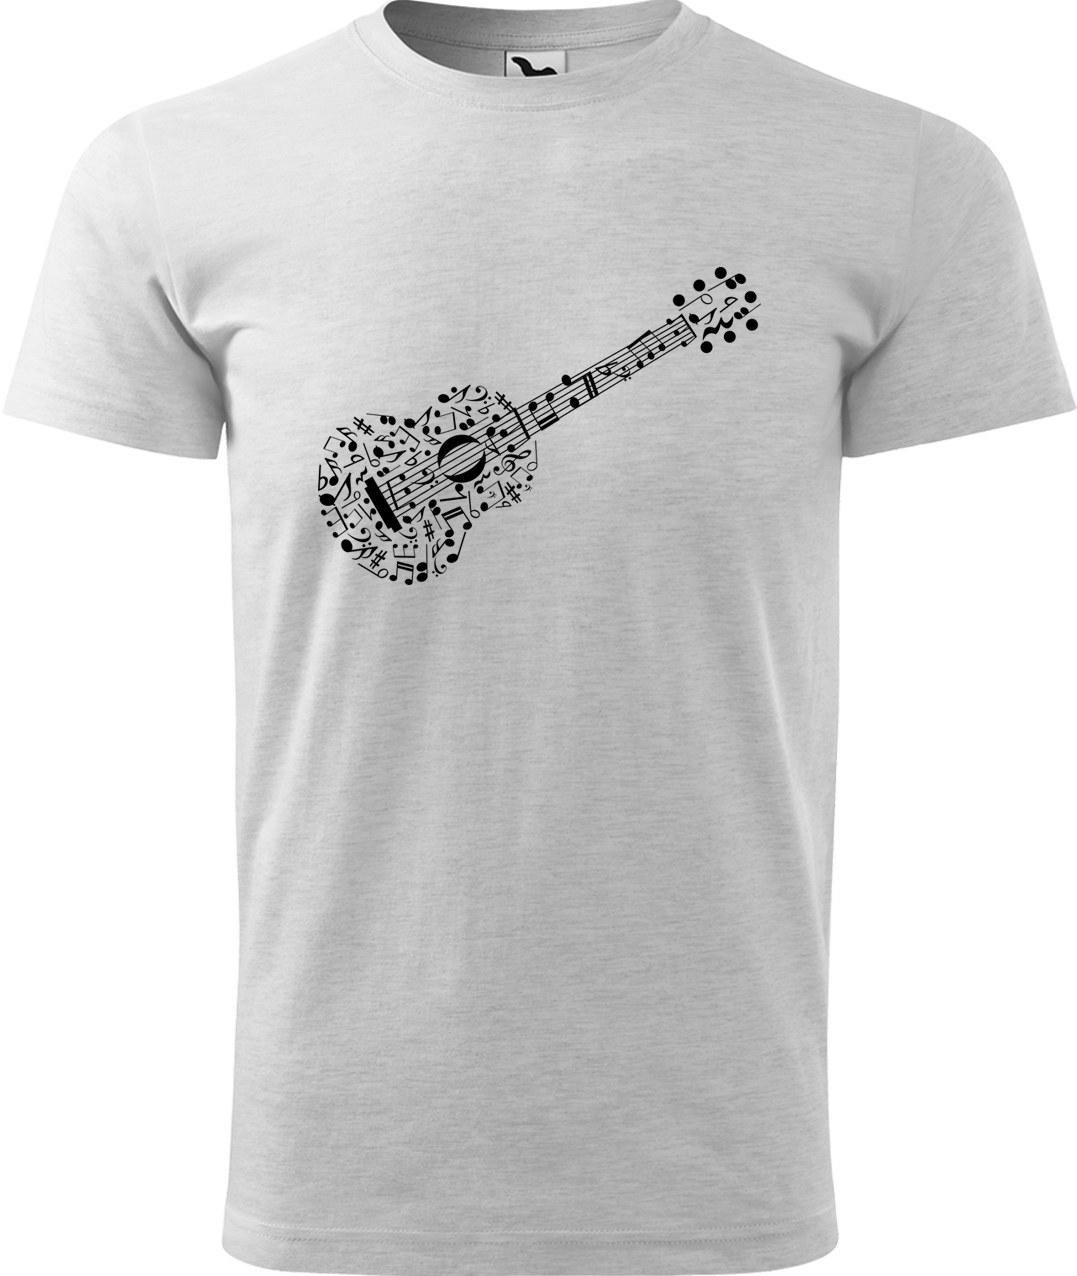 Pánské tričko s kytarou - Kytara z not Velikost: XL, Barva: Světle šedý melír (03), Střih: pánský